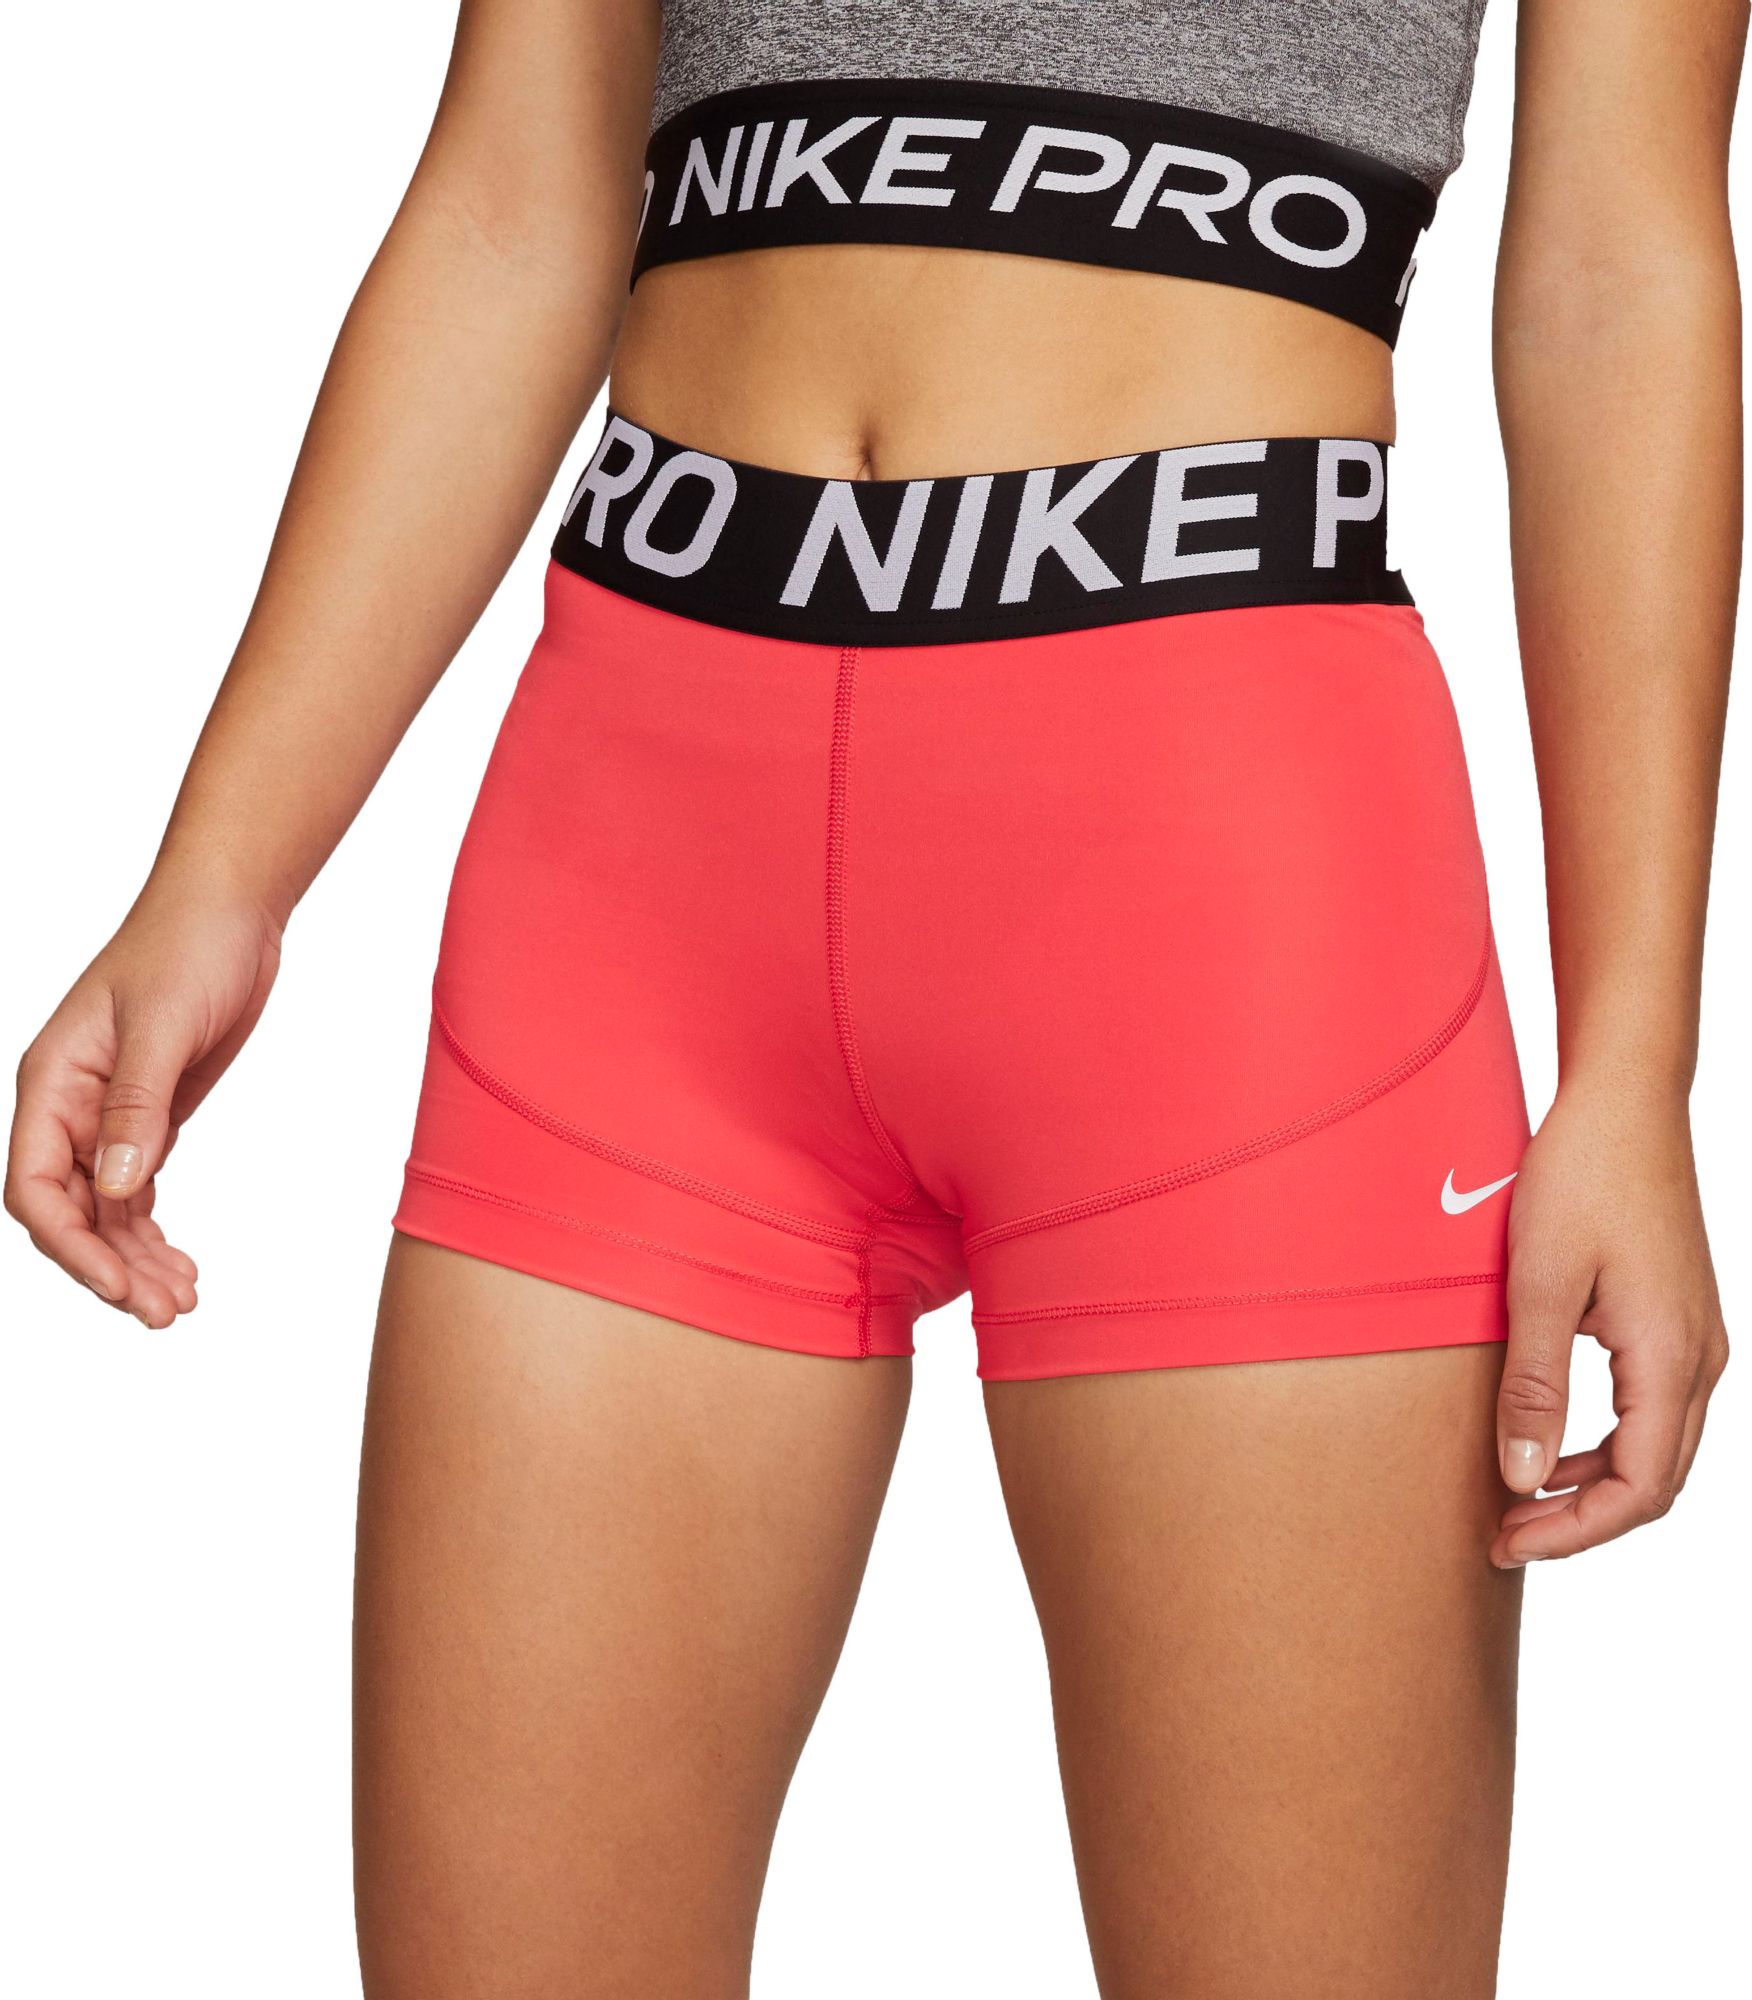 nike pro training shorts